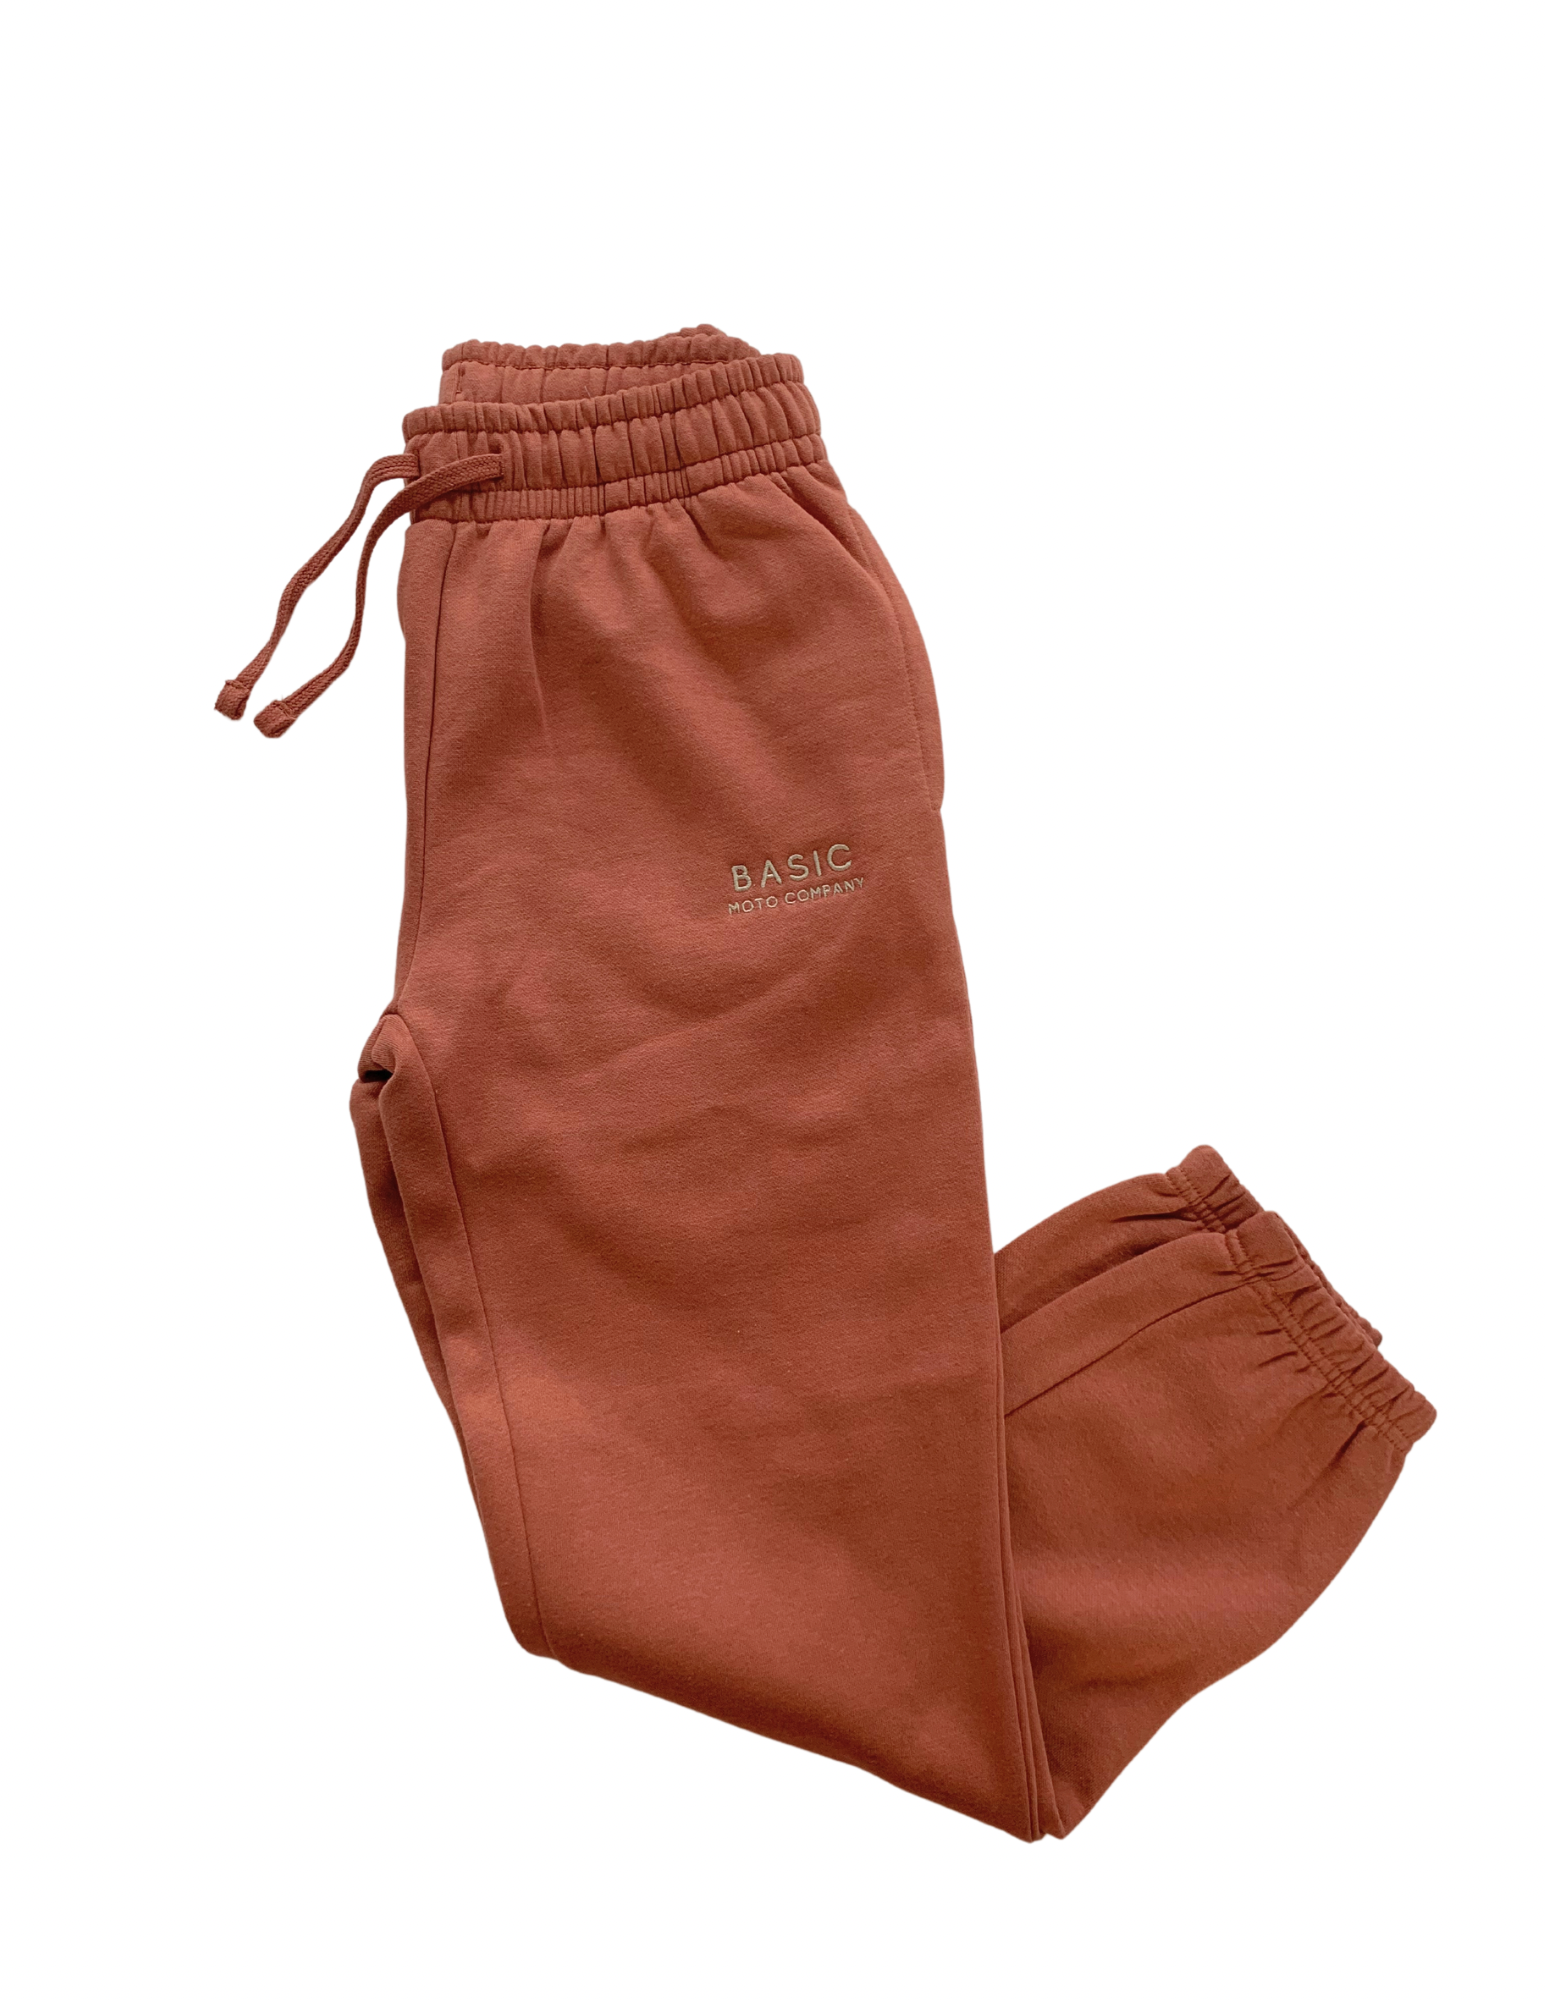 BASIC - Women's Sweatpants - Rust